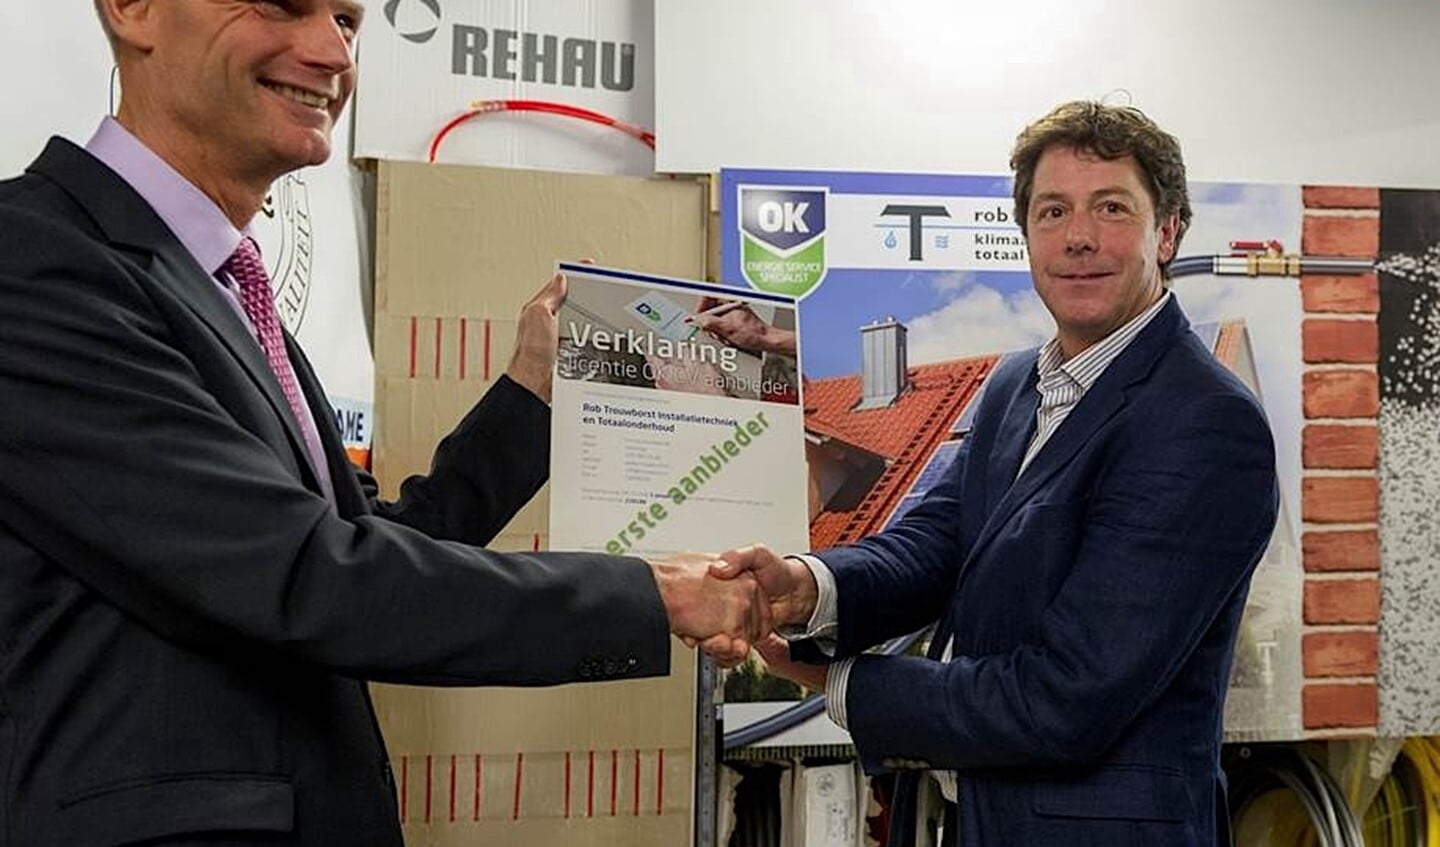 Directeur Rob Trouwborst ontvangt als eerste installateur het OK CV-certificaat van minister Blok voor Wonen en Rijksdienst.